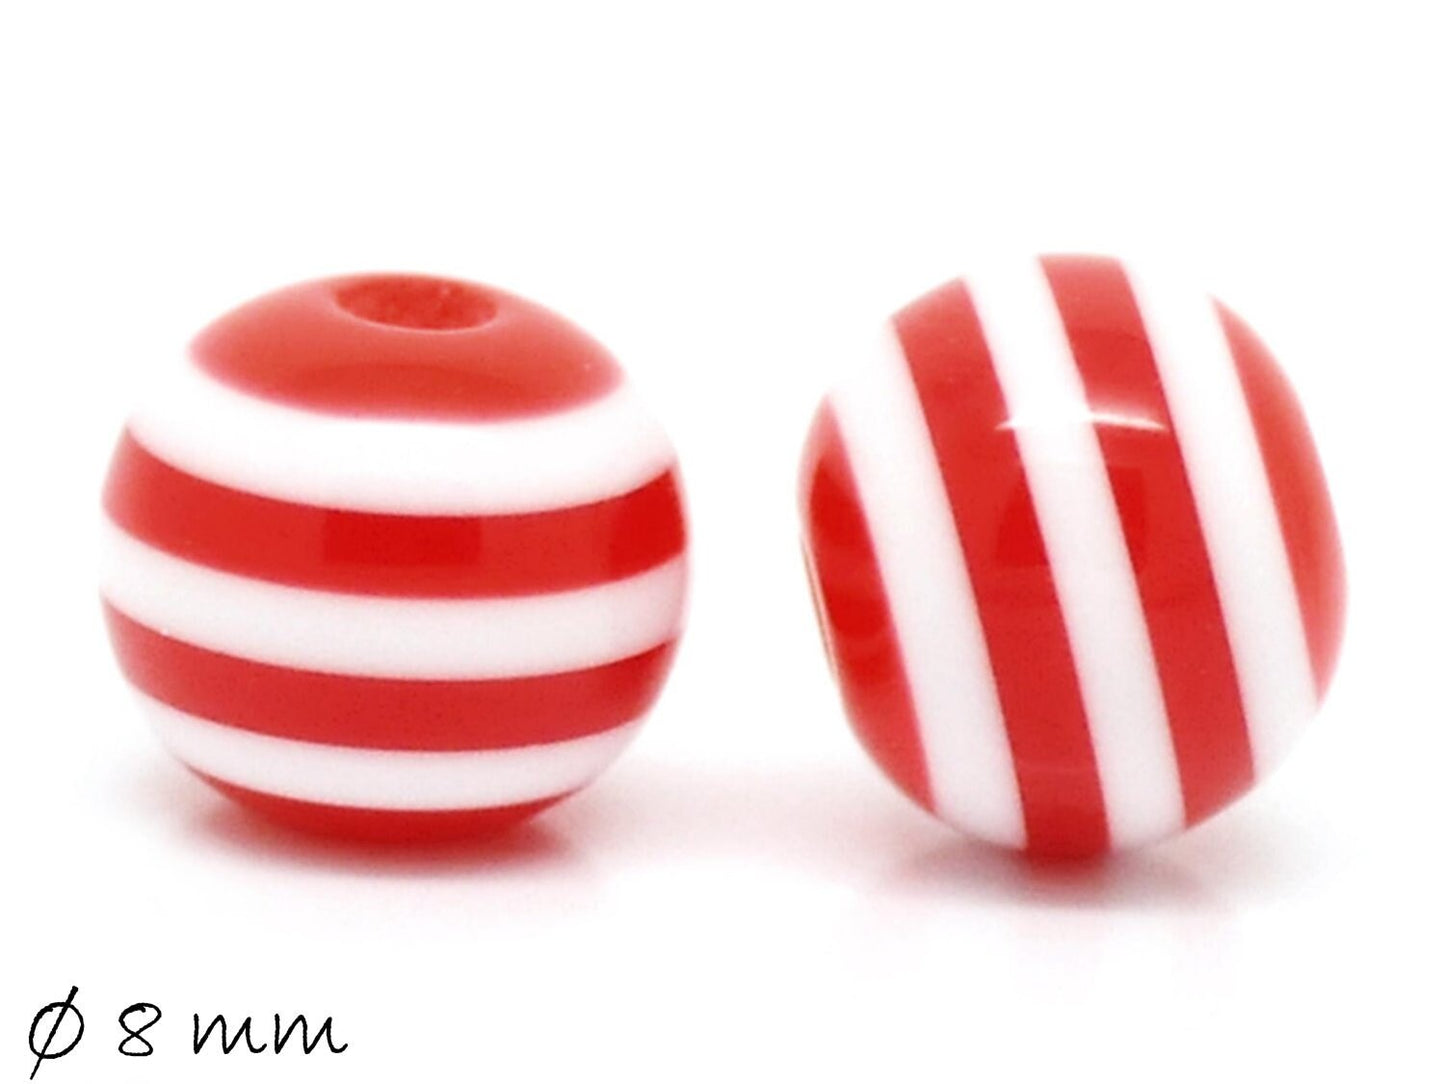 20 Stück Resin Perlen bunt, rot-weiß, Ø 8 mm